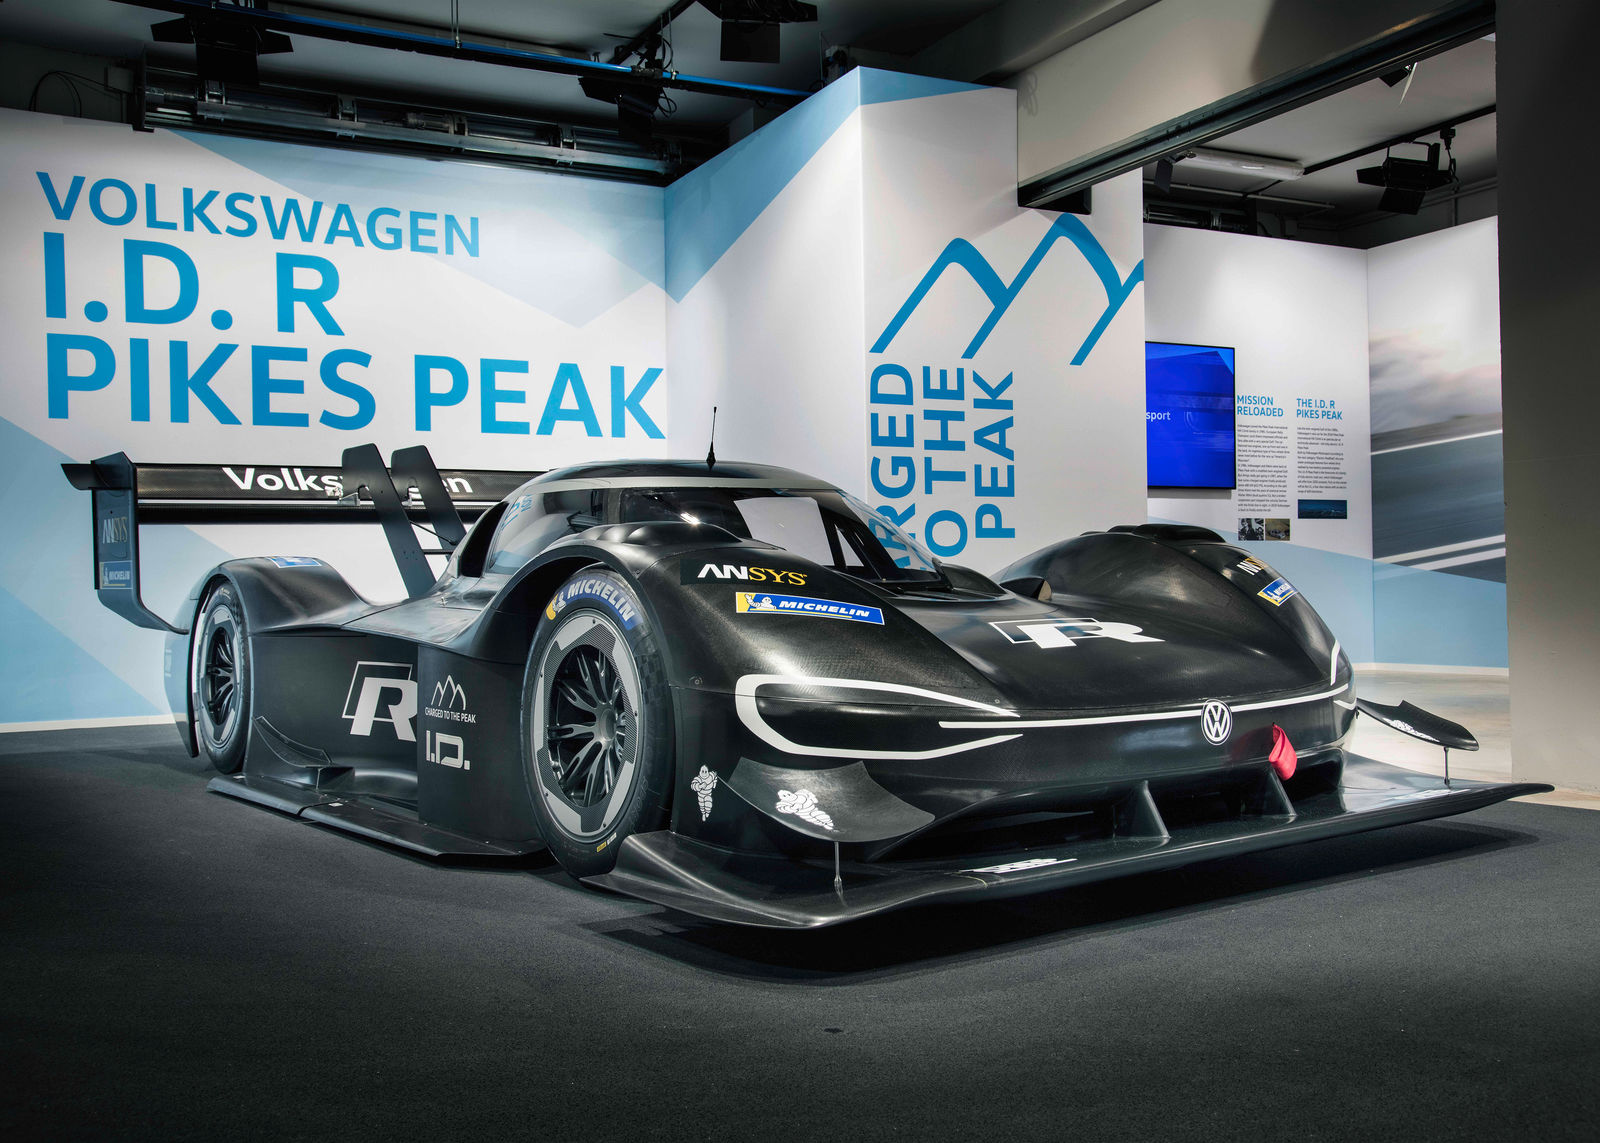 Der Volkswagen ID. R Pikes Peak – Motorsport treibt Elektromobilität auf die Spitze